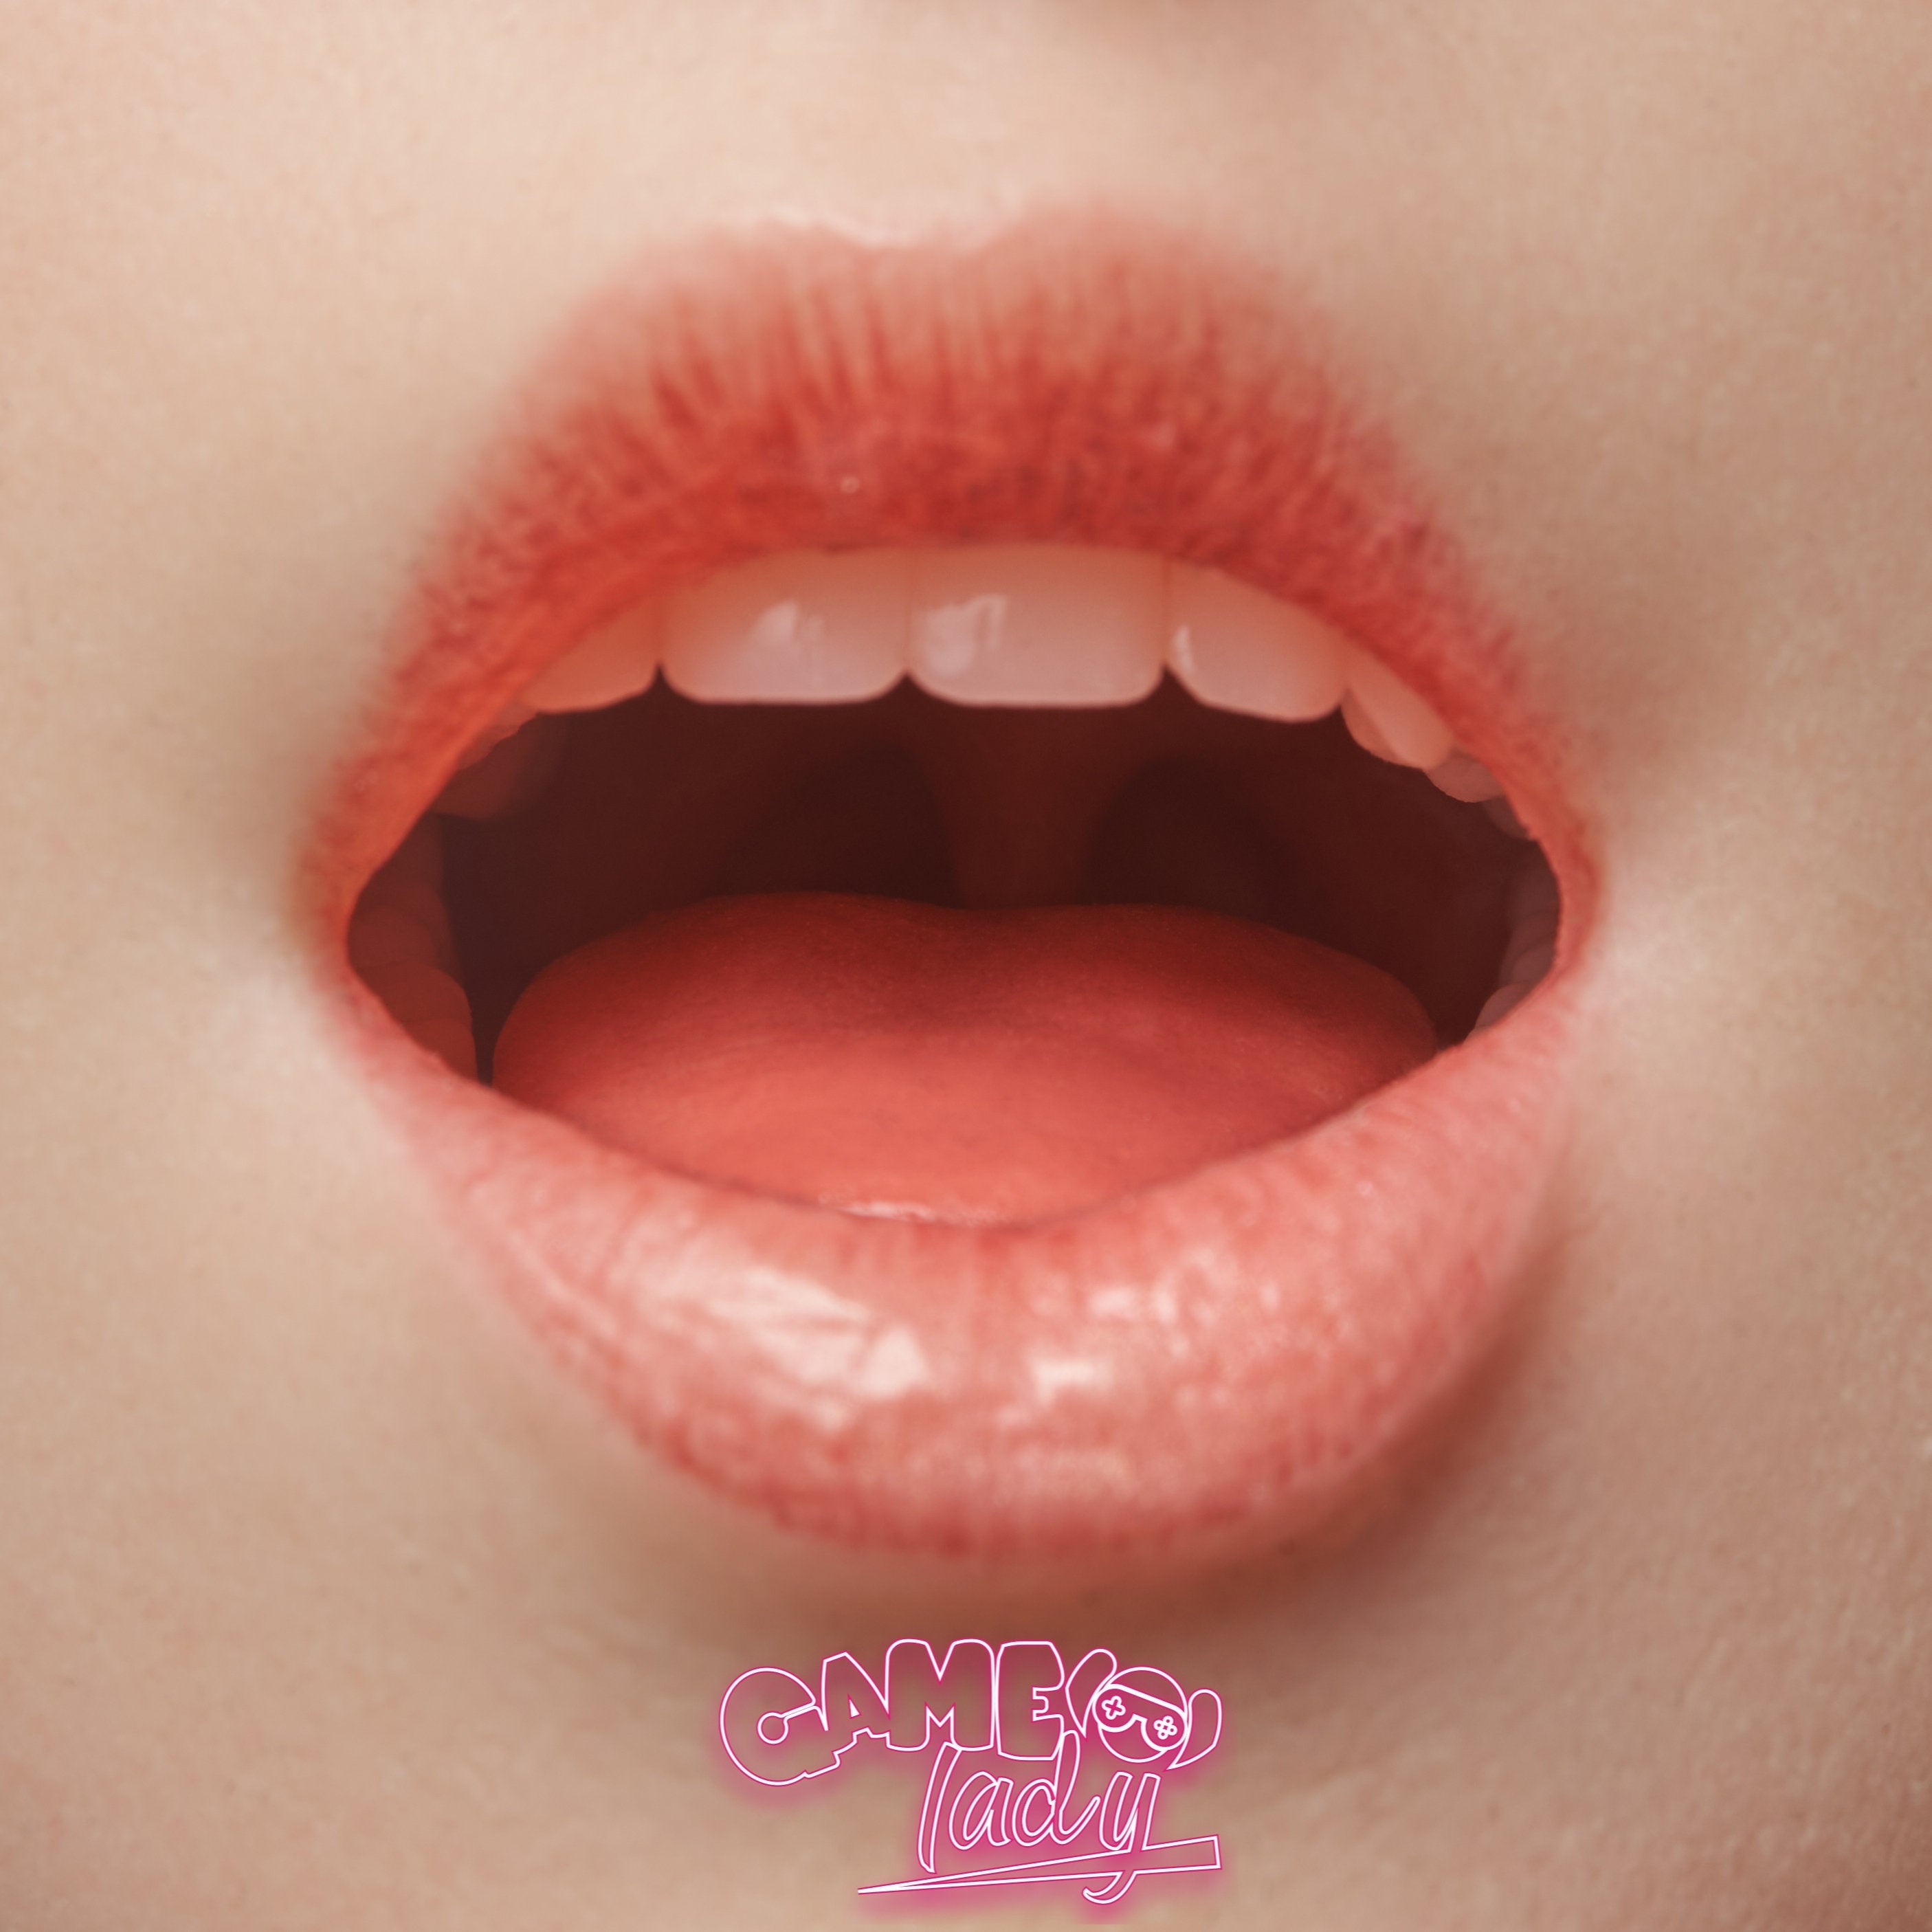 Game Lady 167 cm Silicone - Tifa (Soft Head) | Sex Dolls SG